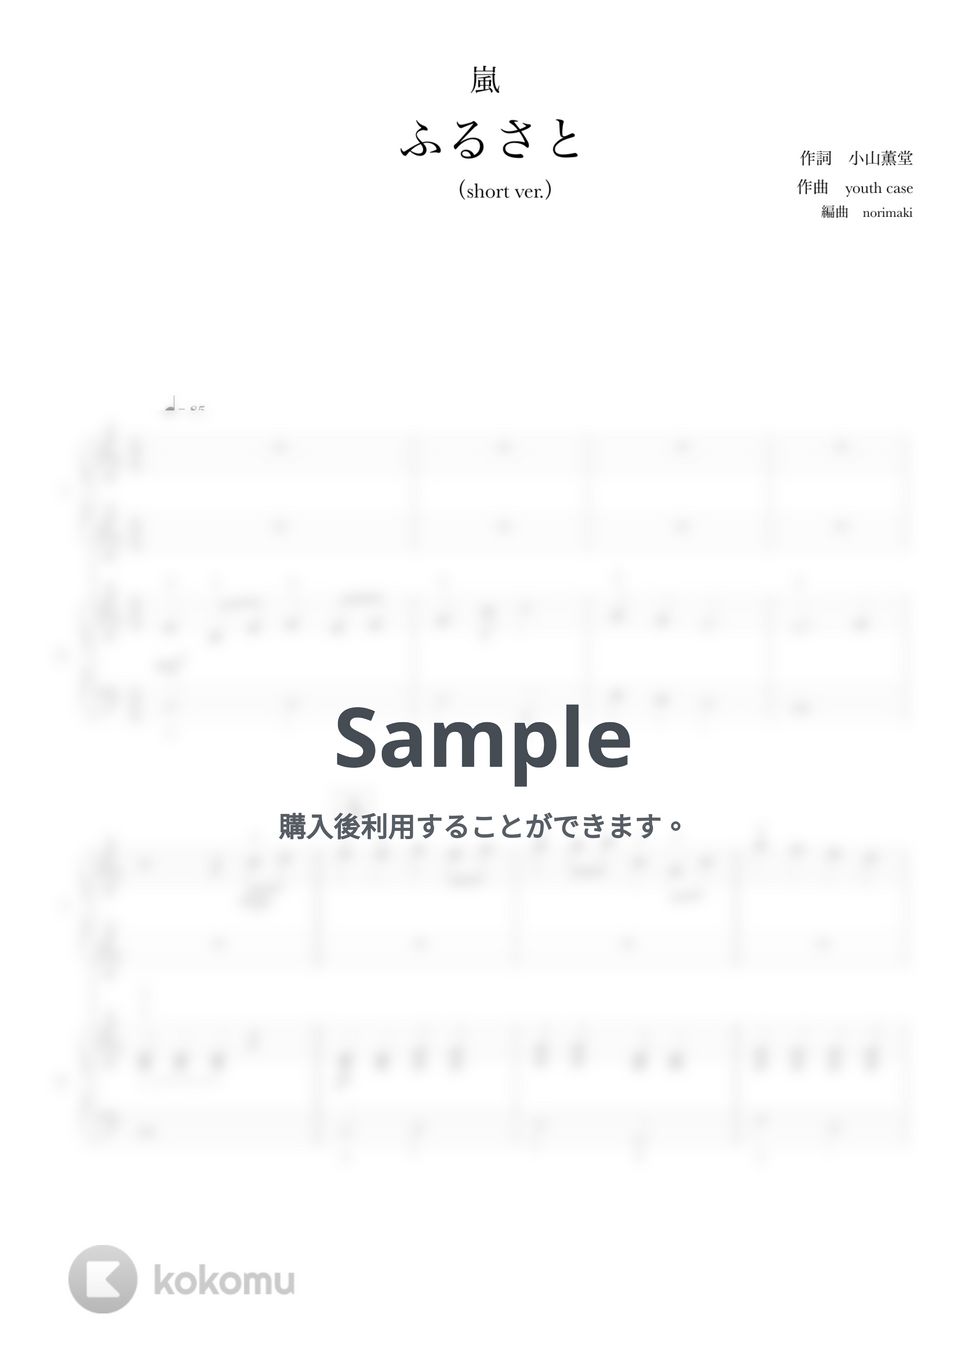 嵐 - ふるさと (ピアノ連弾/ショートサイズ) by norimaki